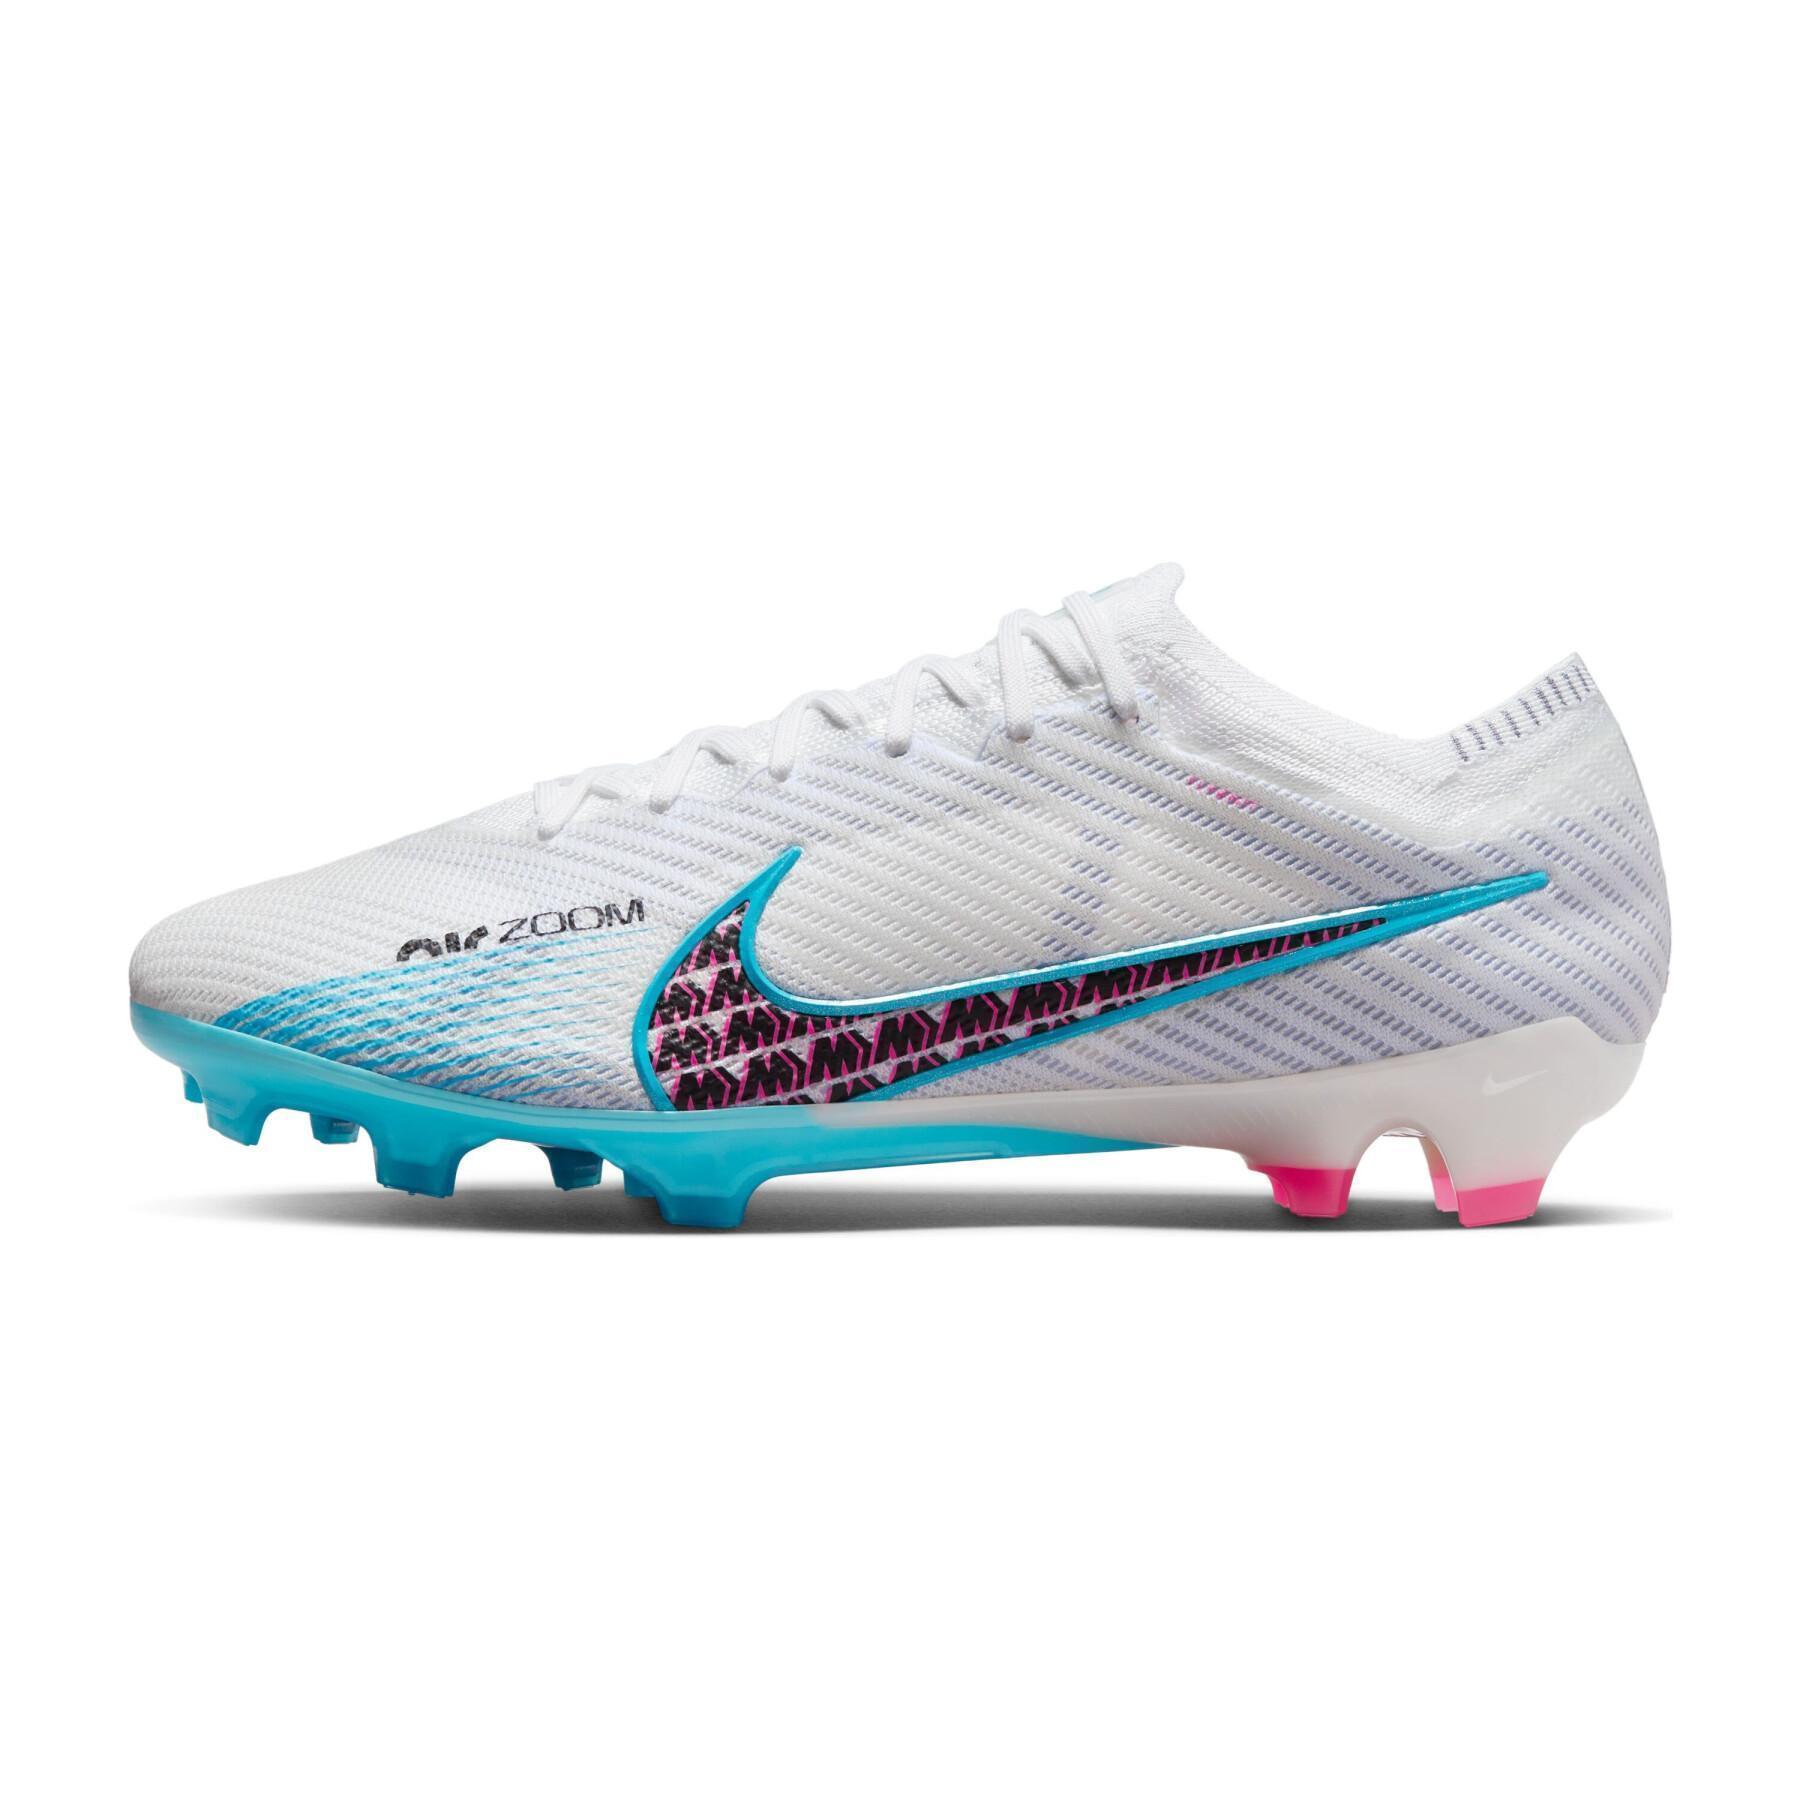 Soccer shoes Nike Zoom Mercurial Vapor 15 Elite FG – Blast Pack